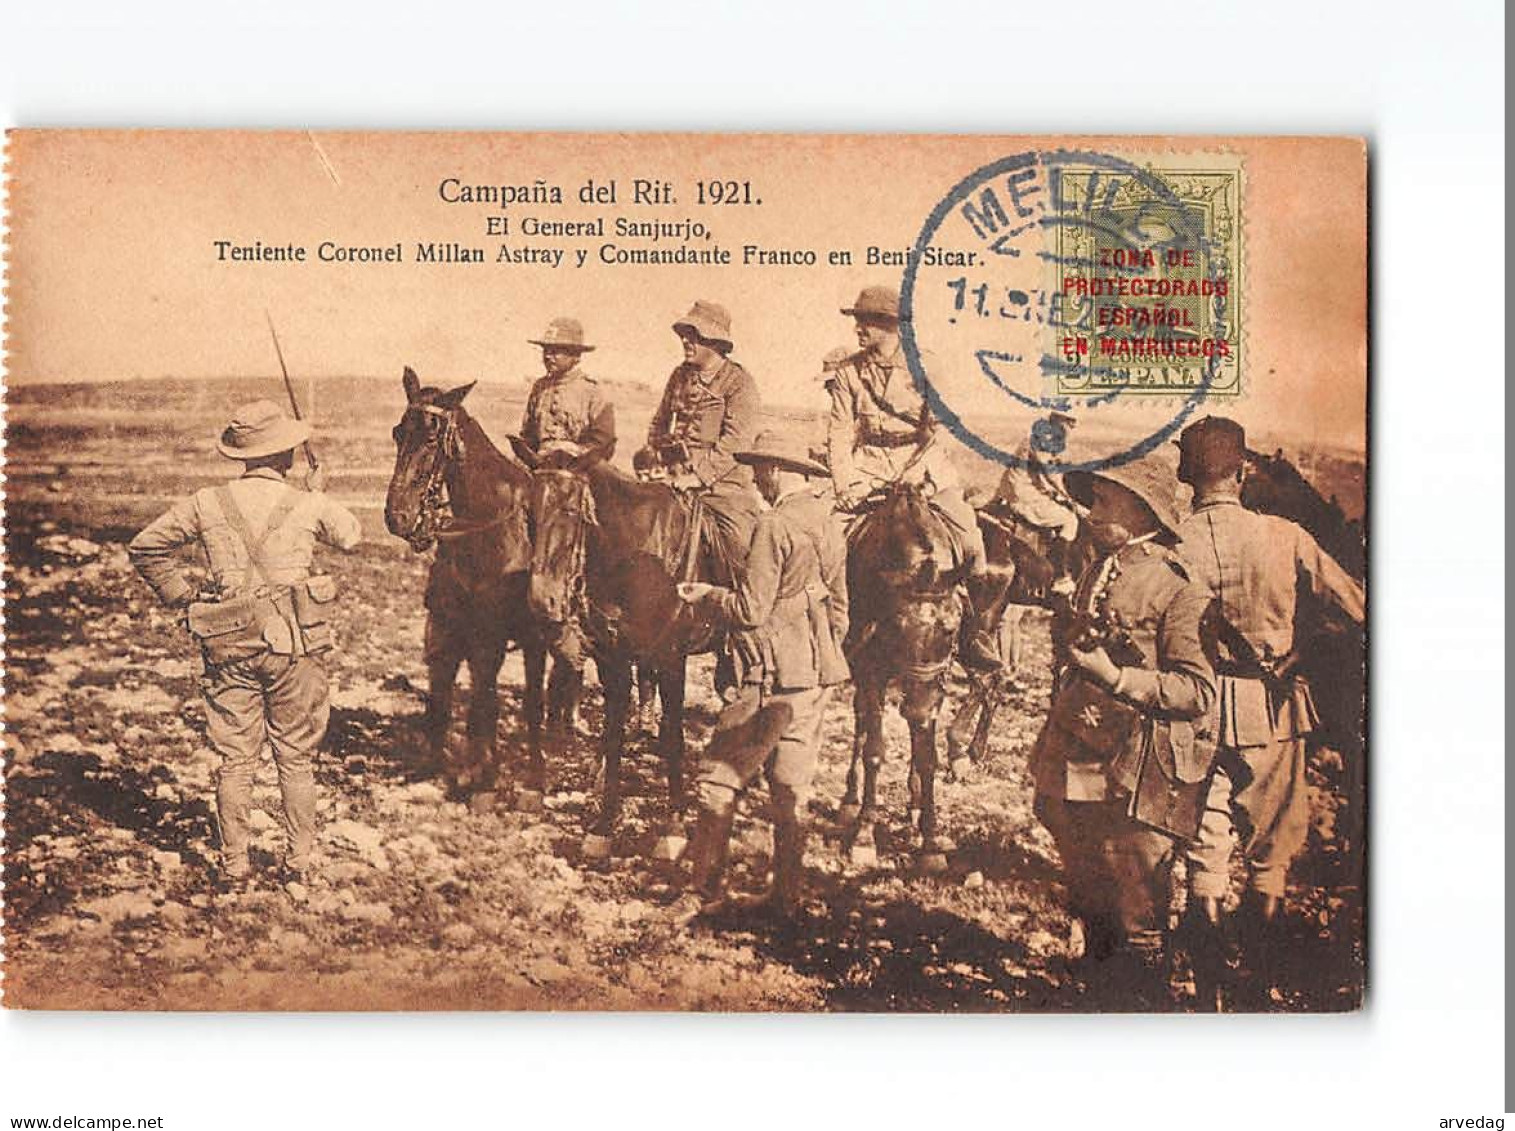 X1660 CAMPANA DEL RIF. 1921 EL GENERAL SANJURJO PTENIENTE CORONEL MILLAN ASTRAY Y COMANDANTE FRANCO EN BENI SICAR - POST - Other Wars